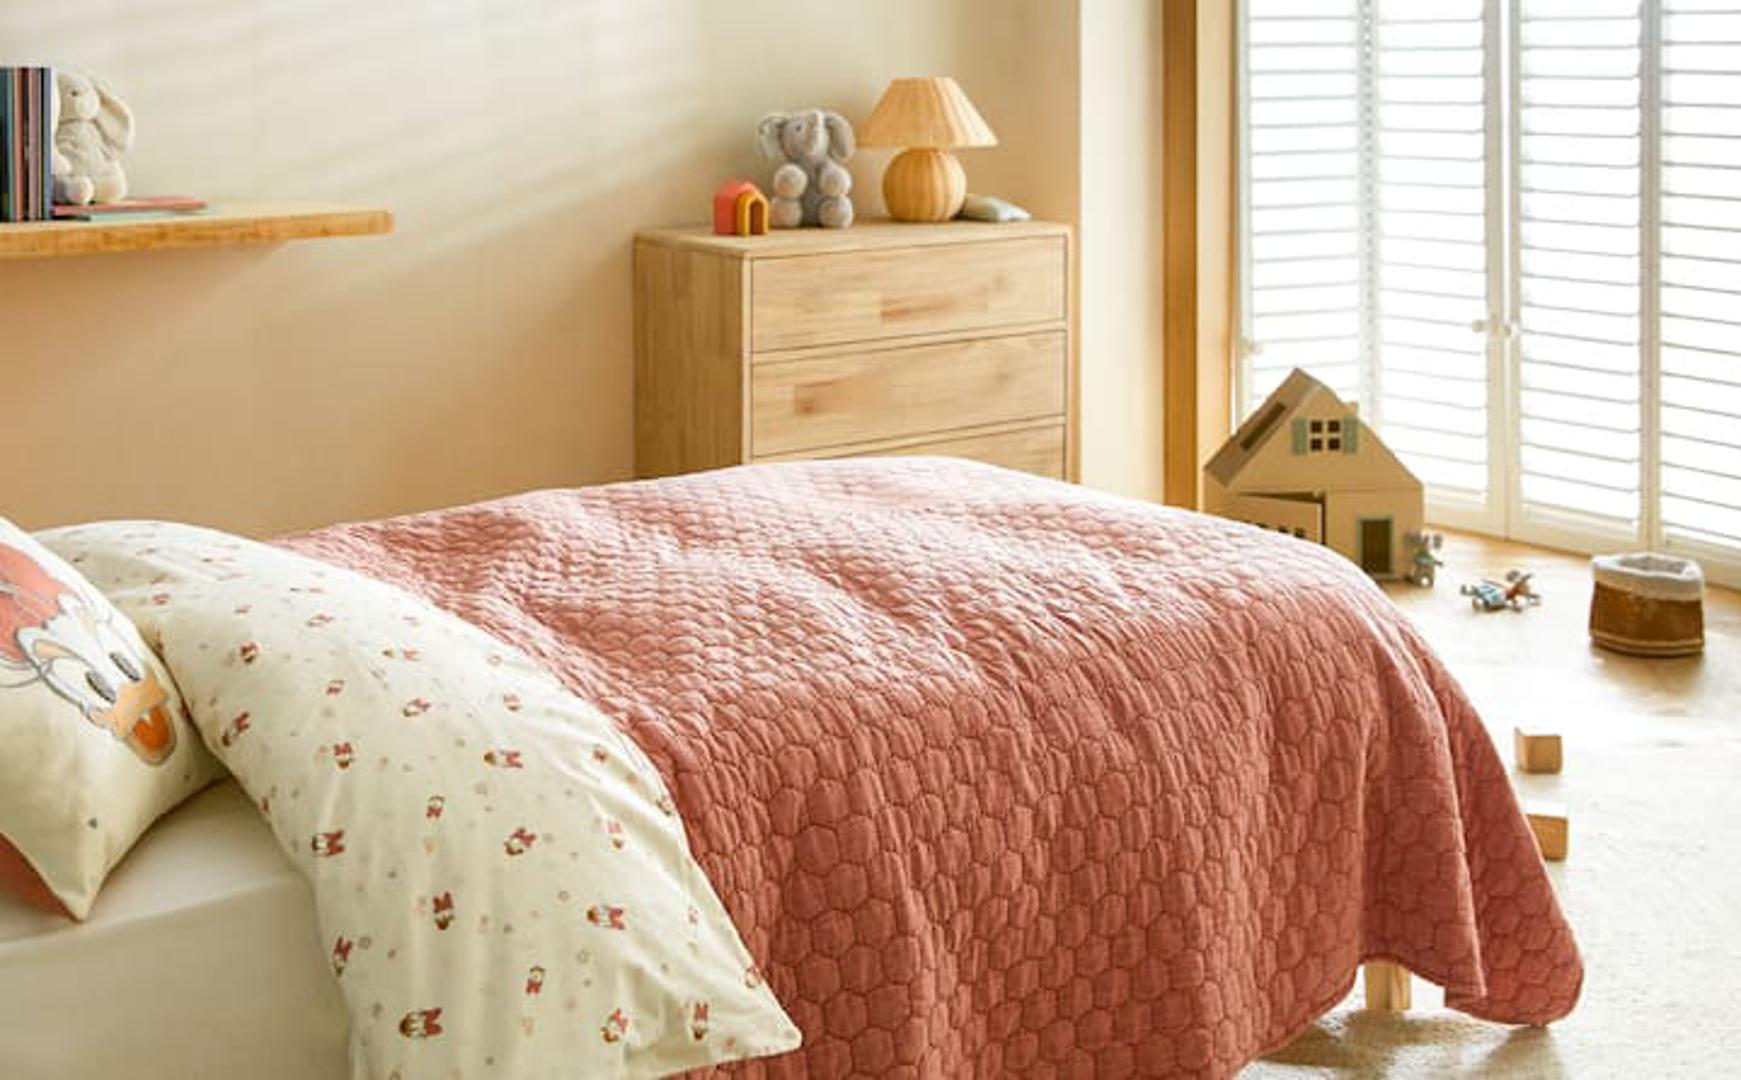 Ljetna posteljina neka bude lagana i od prirodnih materijala. Cijene se, ovisno o dimenzijama, kreću od 159 kuna naviše